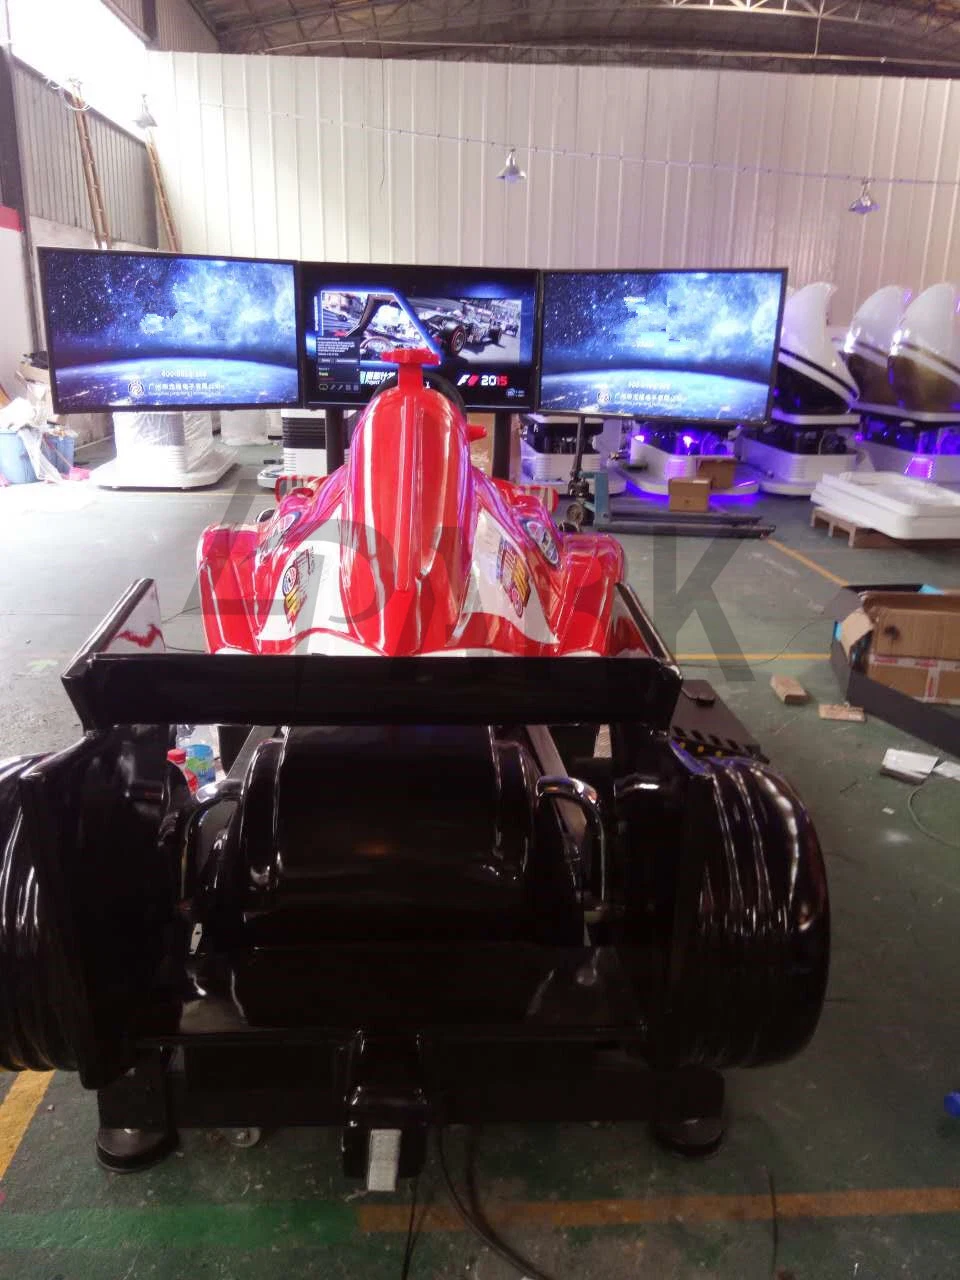 F1 Simulator Racing Cars Racing Go Karts for Sale Free Car Racing Games